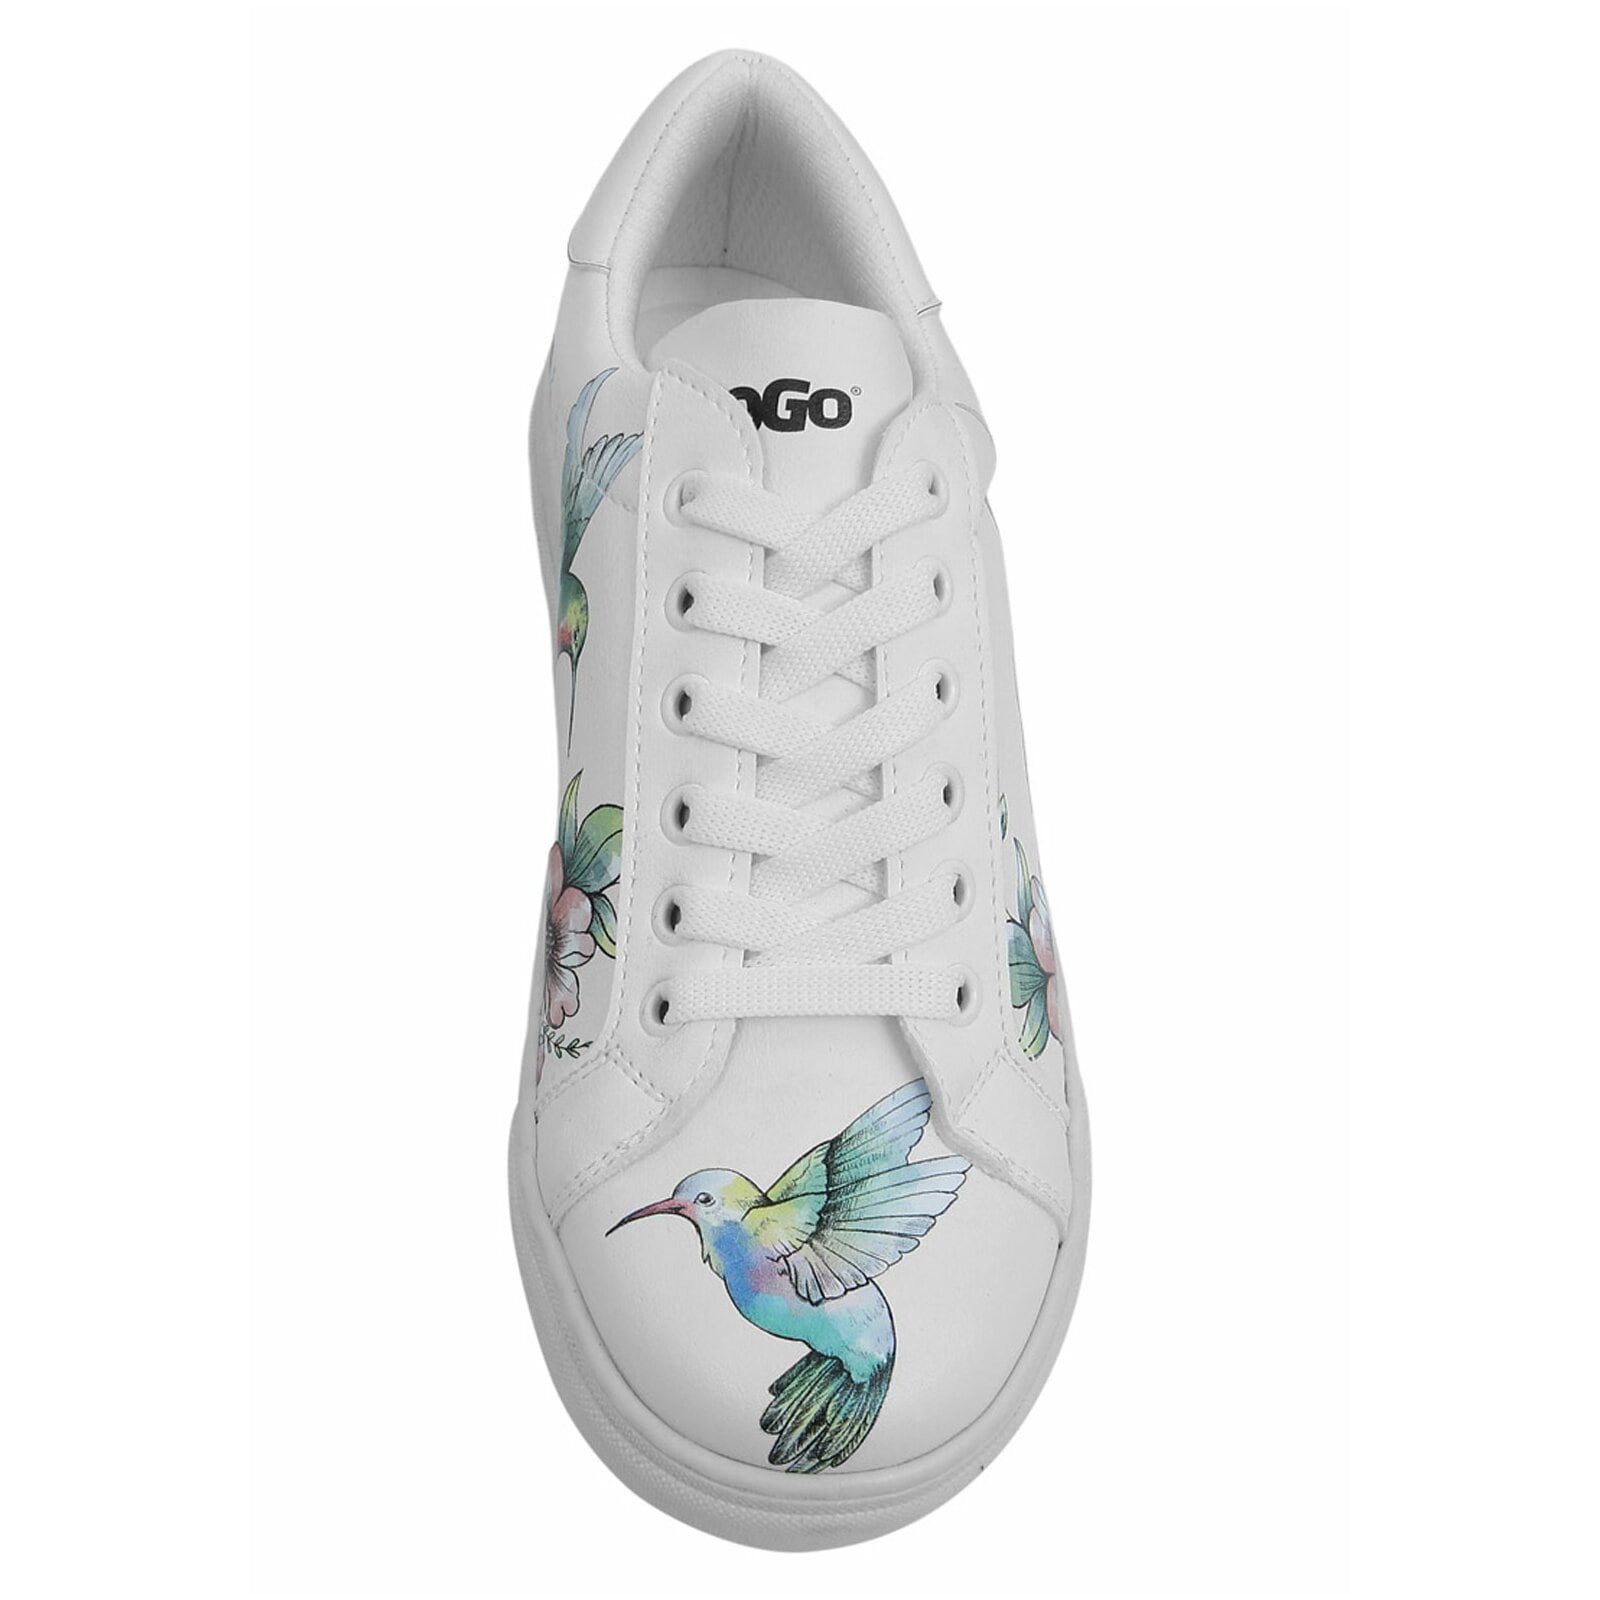 DOGO Sneaker »As Free As a Bird«, Vegan